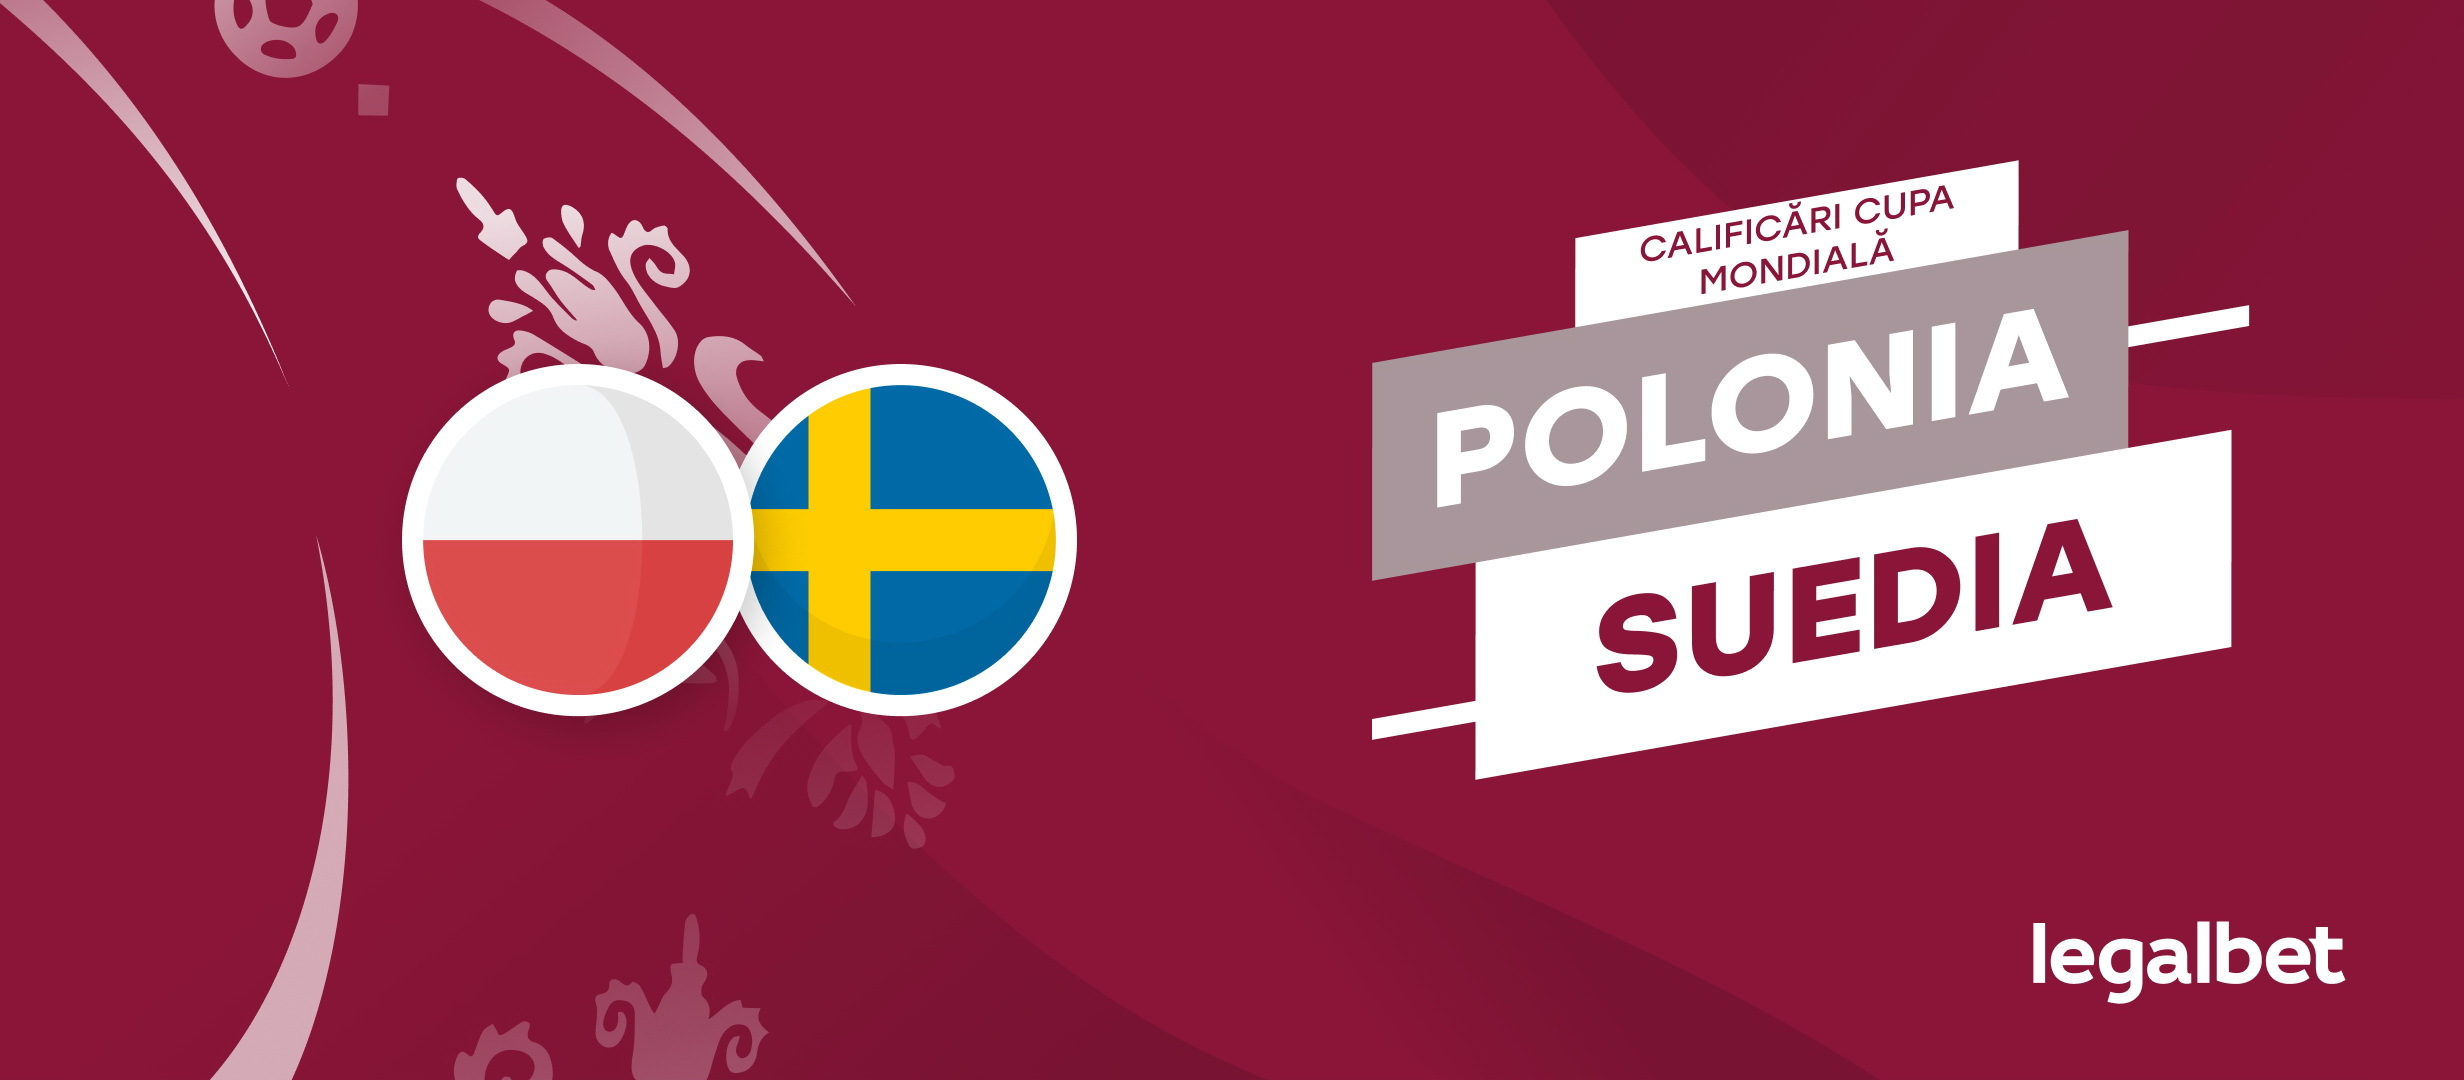 Polonia - Suedia - ponturi la pariuri pentru finala play-off-ului la Campionatul Mondial